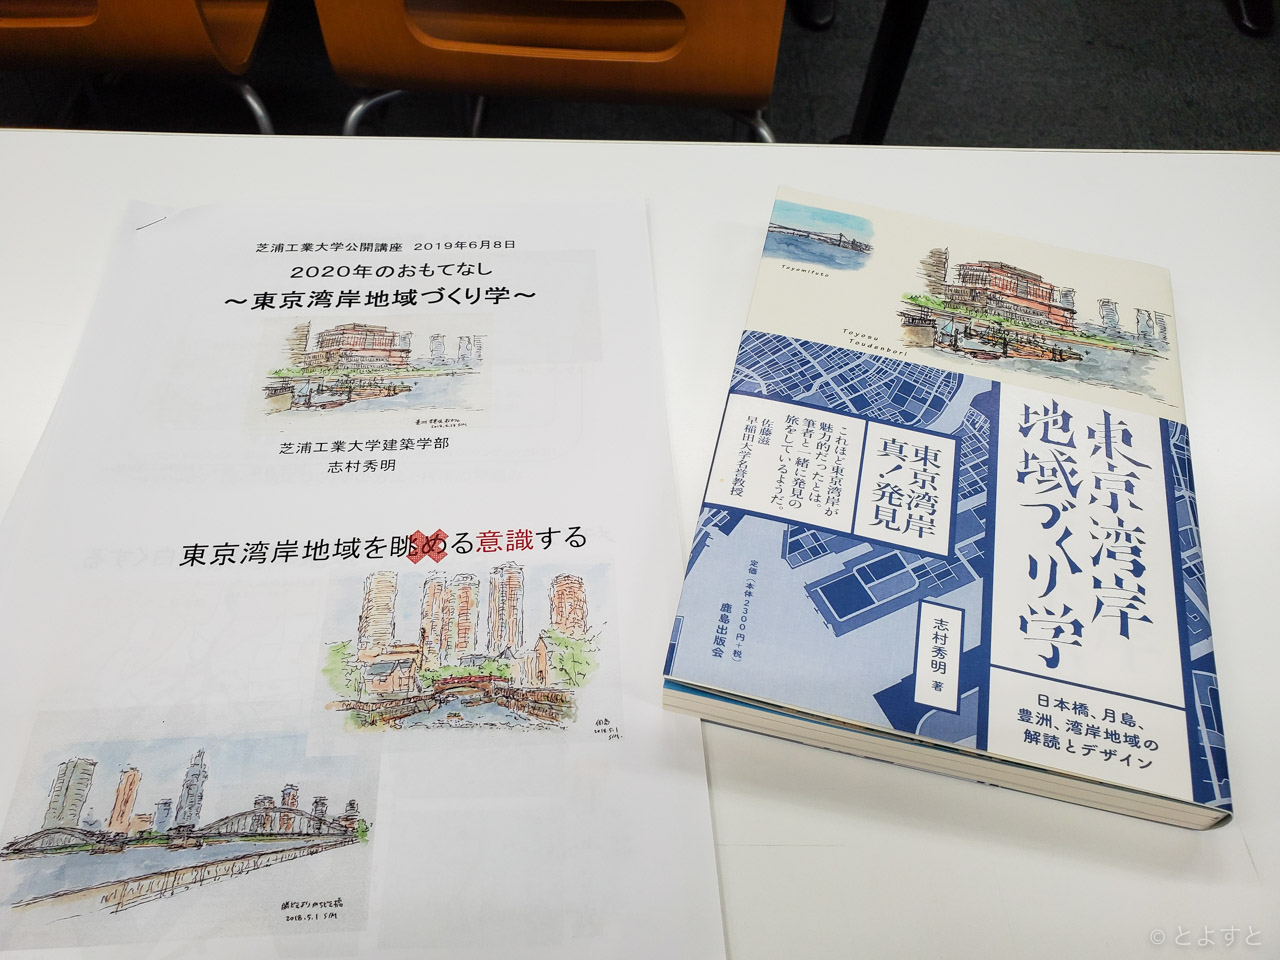 人のつながりこそが地域！芝浦工大の公開講座で東京湾岸地域づくり学を学んできた！